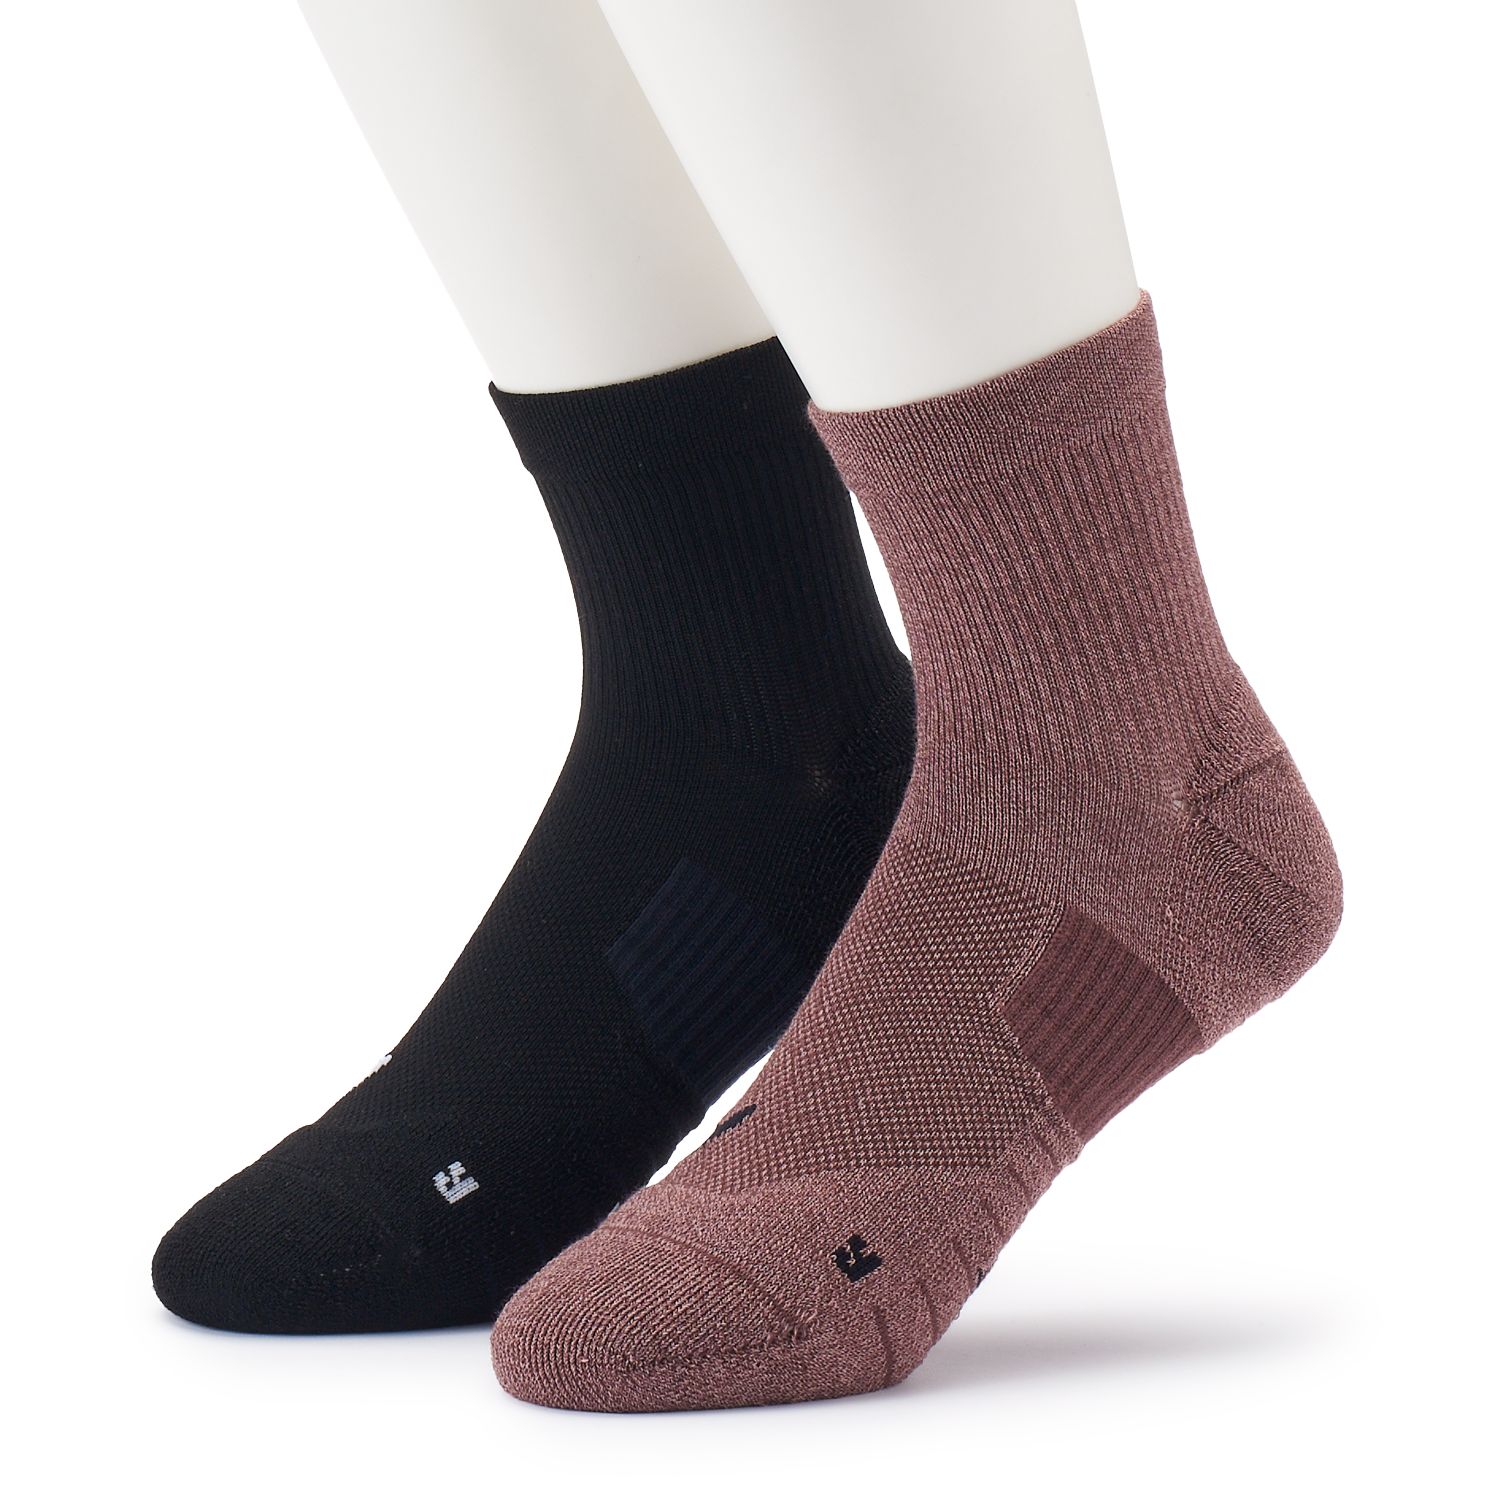 Men's Nike 2-pack Multiplier Ankle Socks